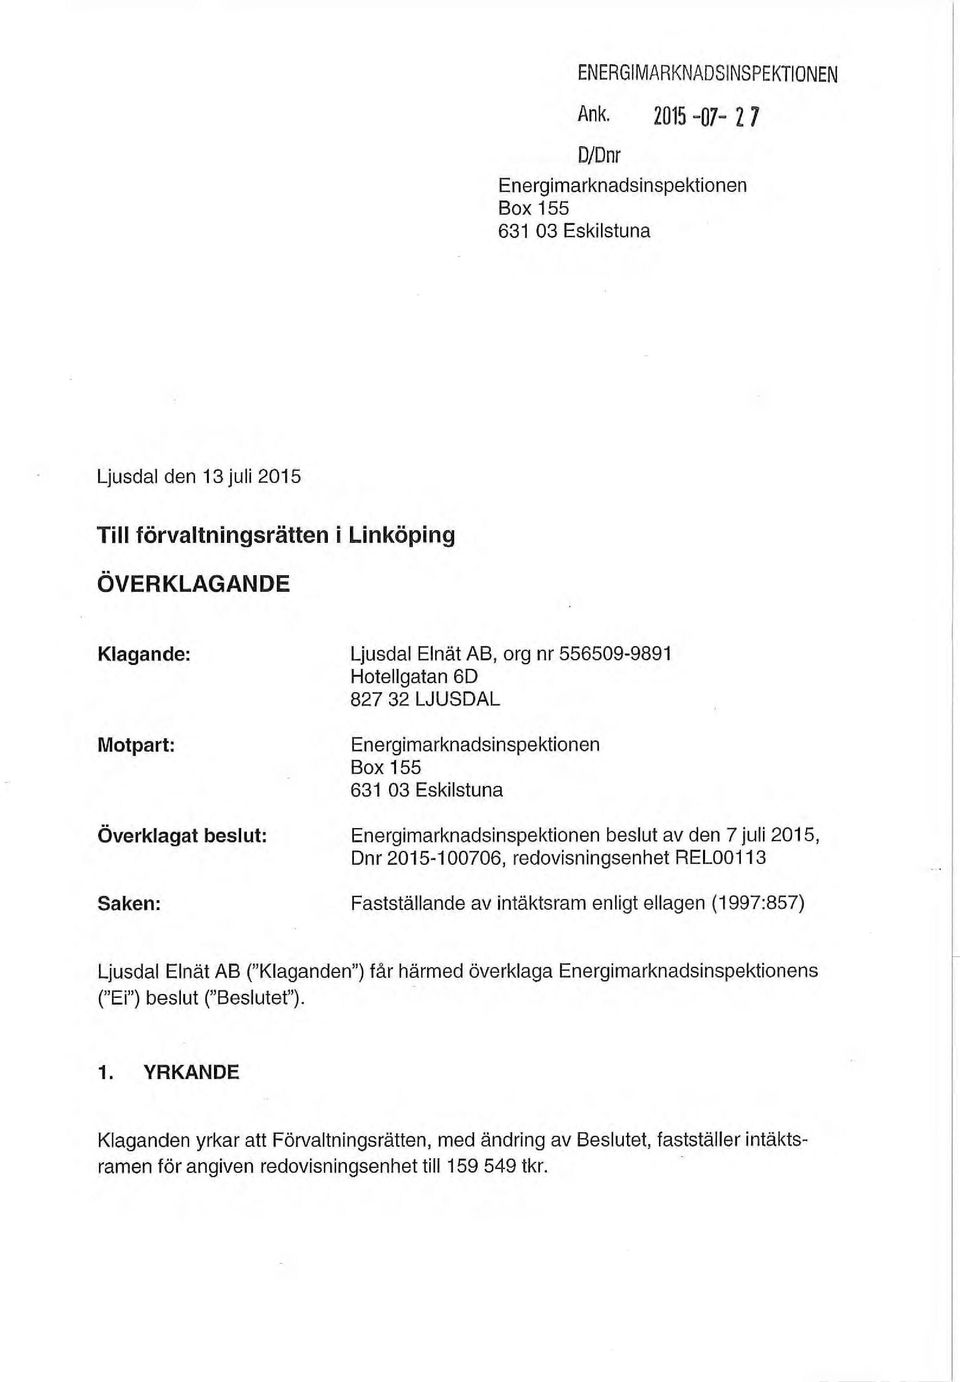 Hotellgatan 6D Motpart: Energinnarknadsinspektionen Box 155 631 03 Eskilstuna Överklagat beslut: Energimarknadsinspektionen beslut av den 7 juli 2015, Dnr 2015-100706,